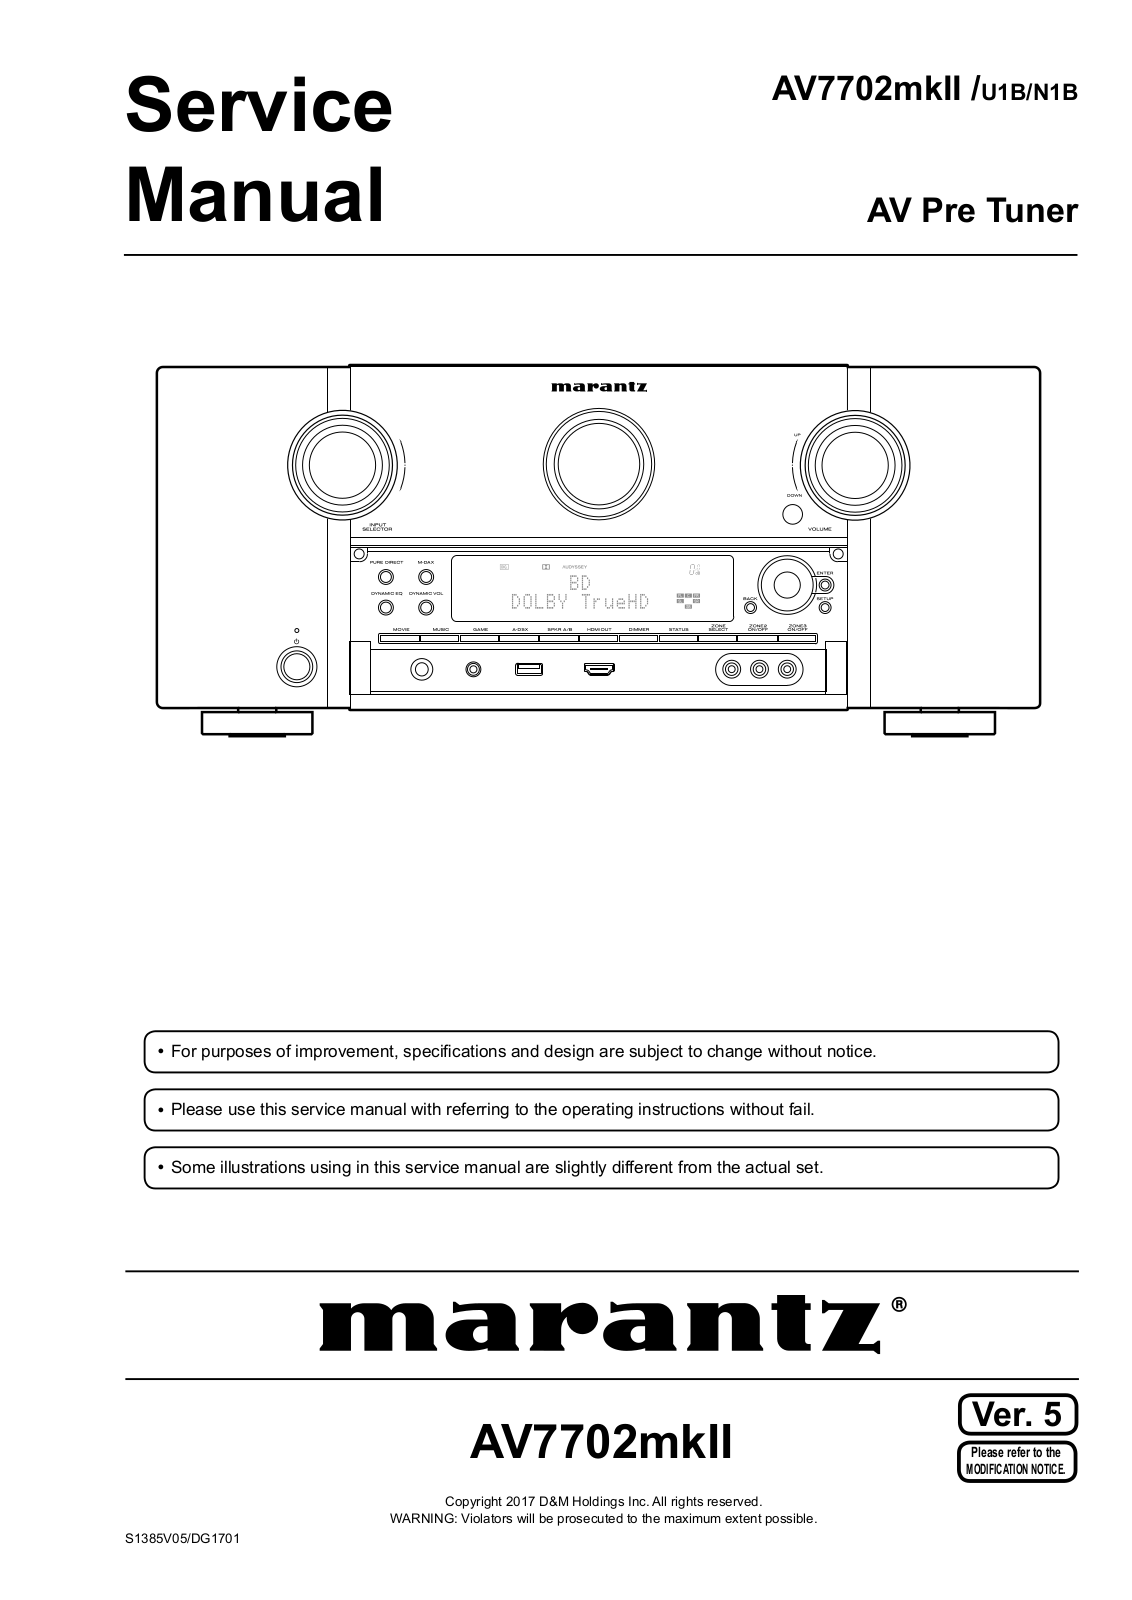 Marantz AV7002mkII, AV7002mkII-u1b, AV7002mkII-n1b Service Manual